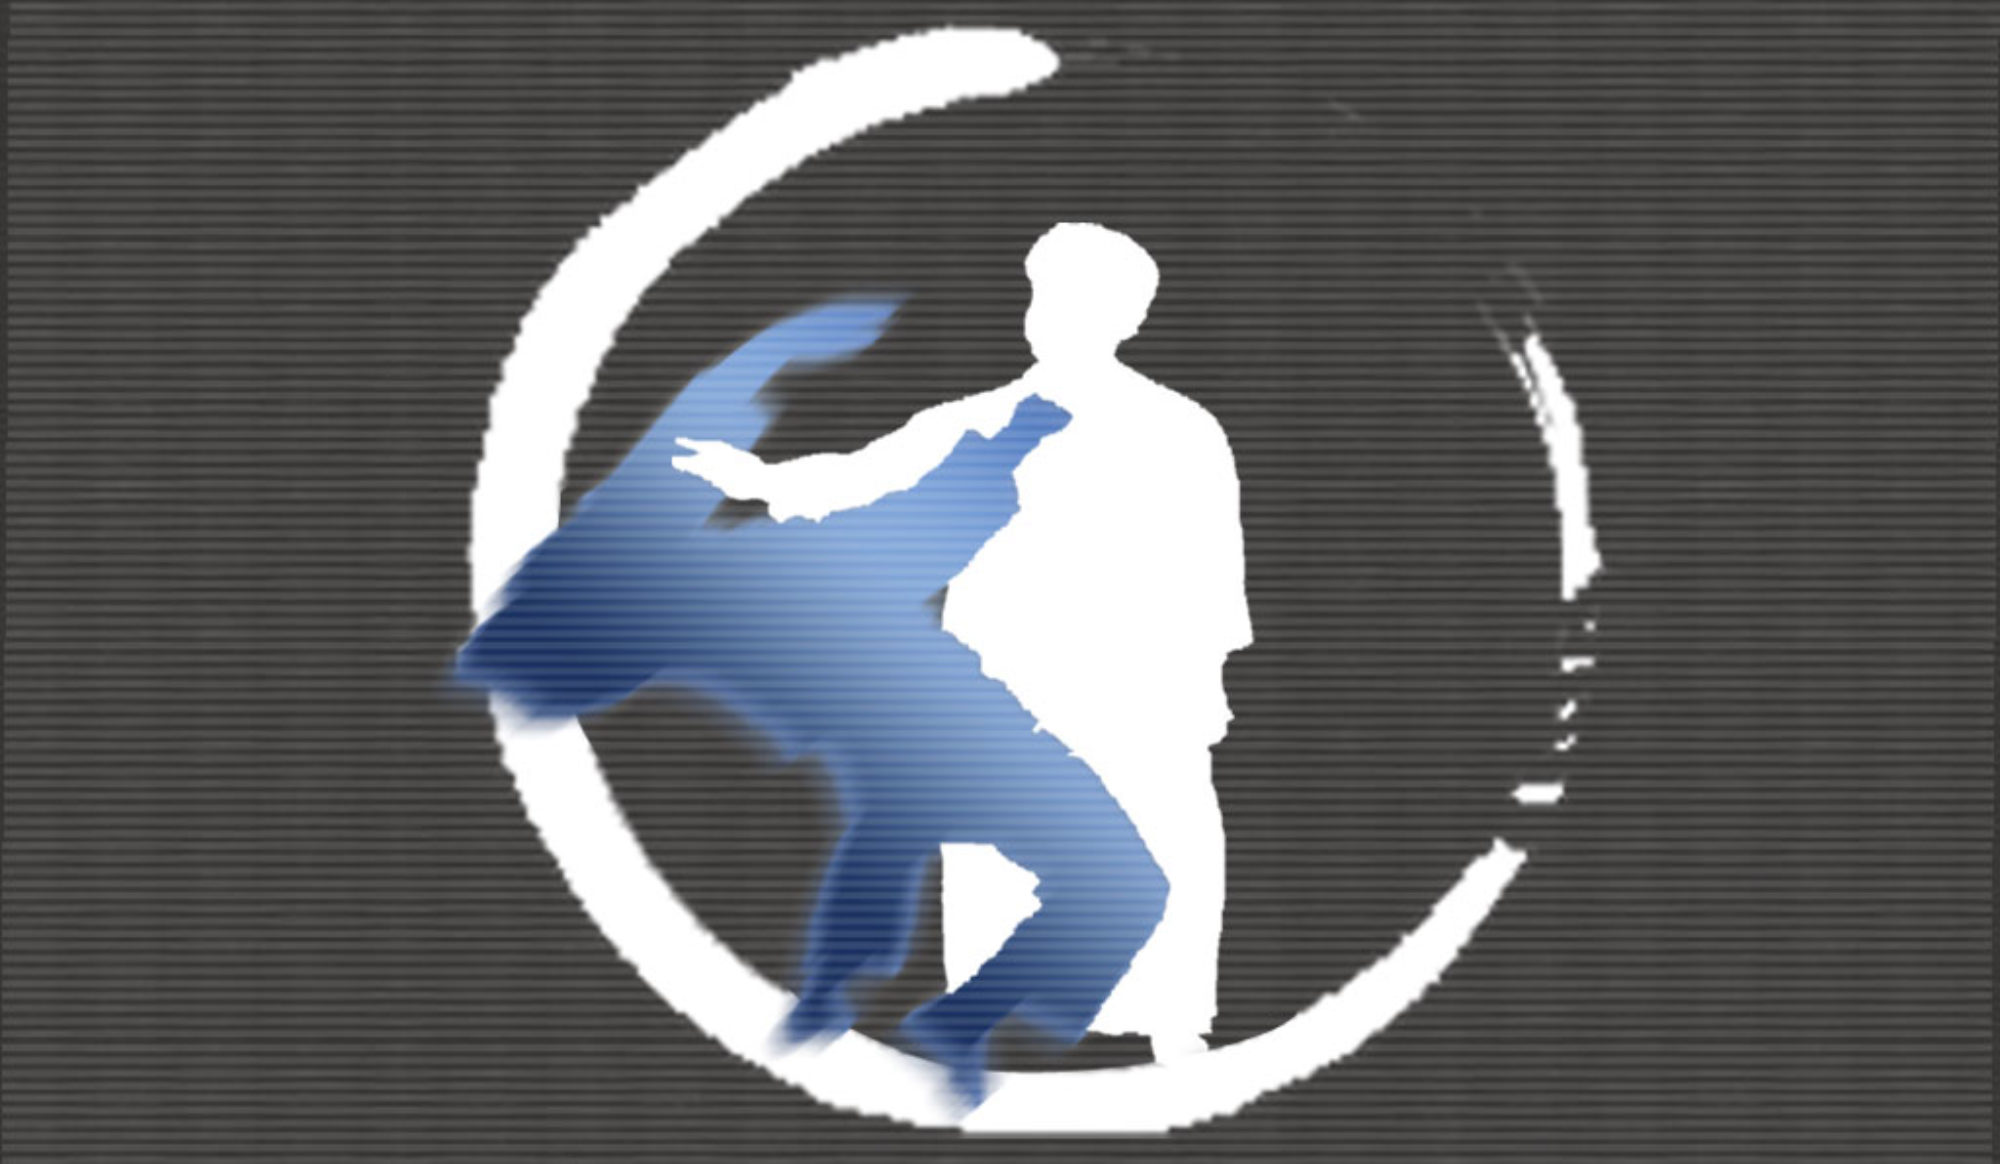 台  灣  大  東  流  合  氣  柔  術  協  會   ---------       Taiwan Daitoryu Aikijujutsu Organization